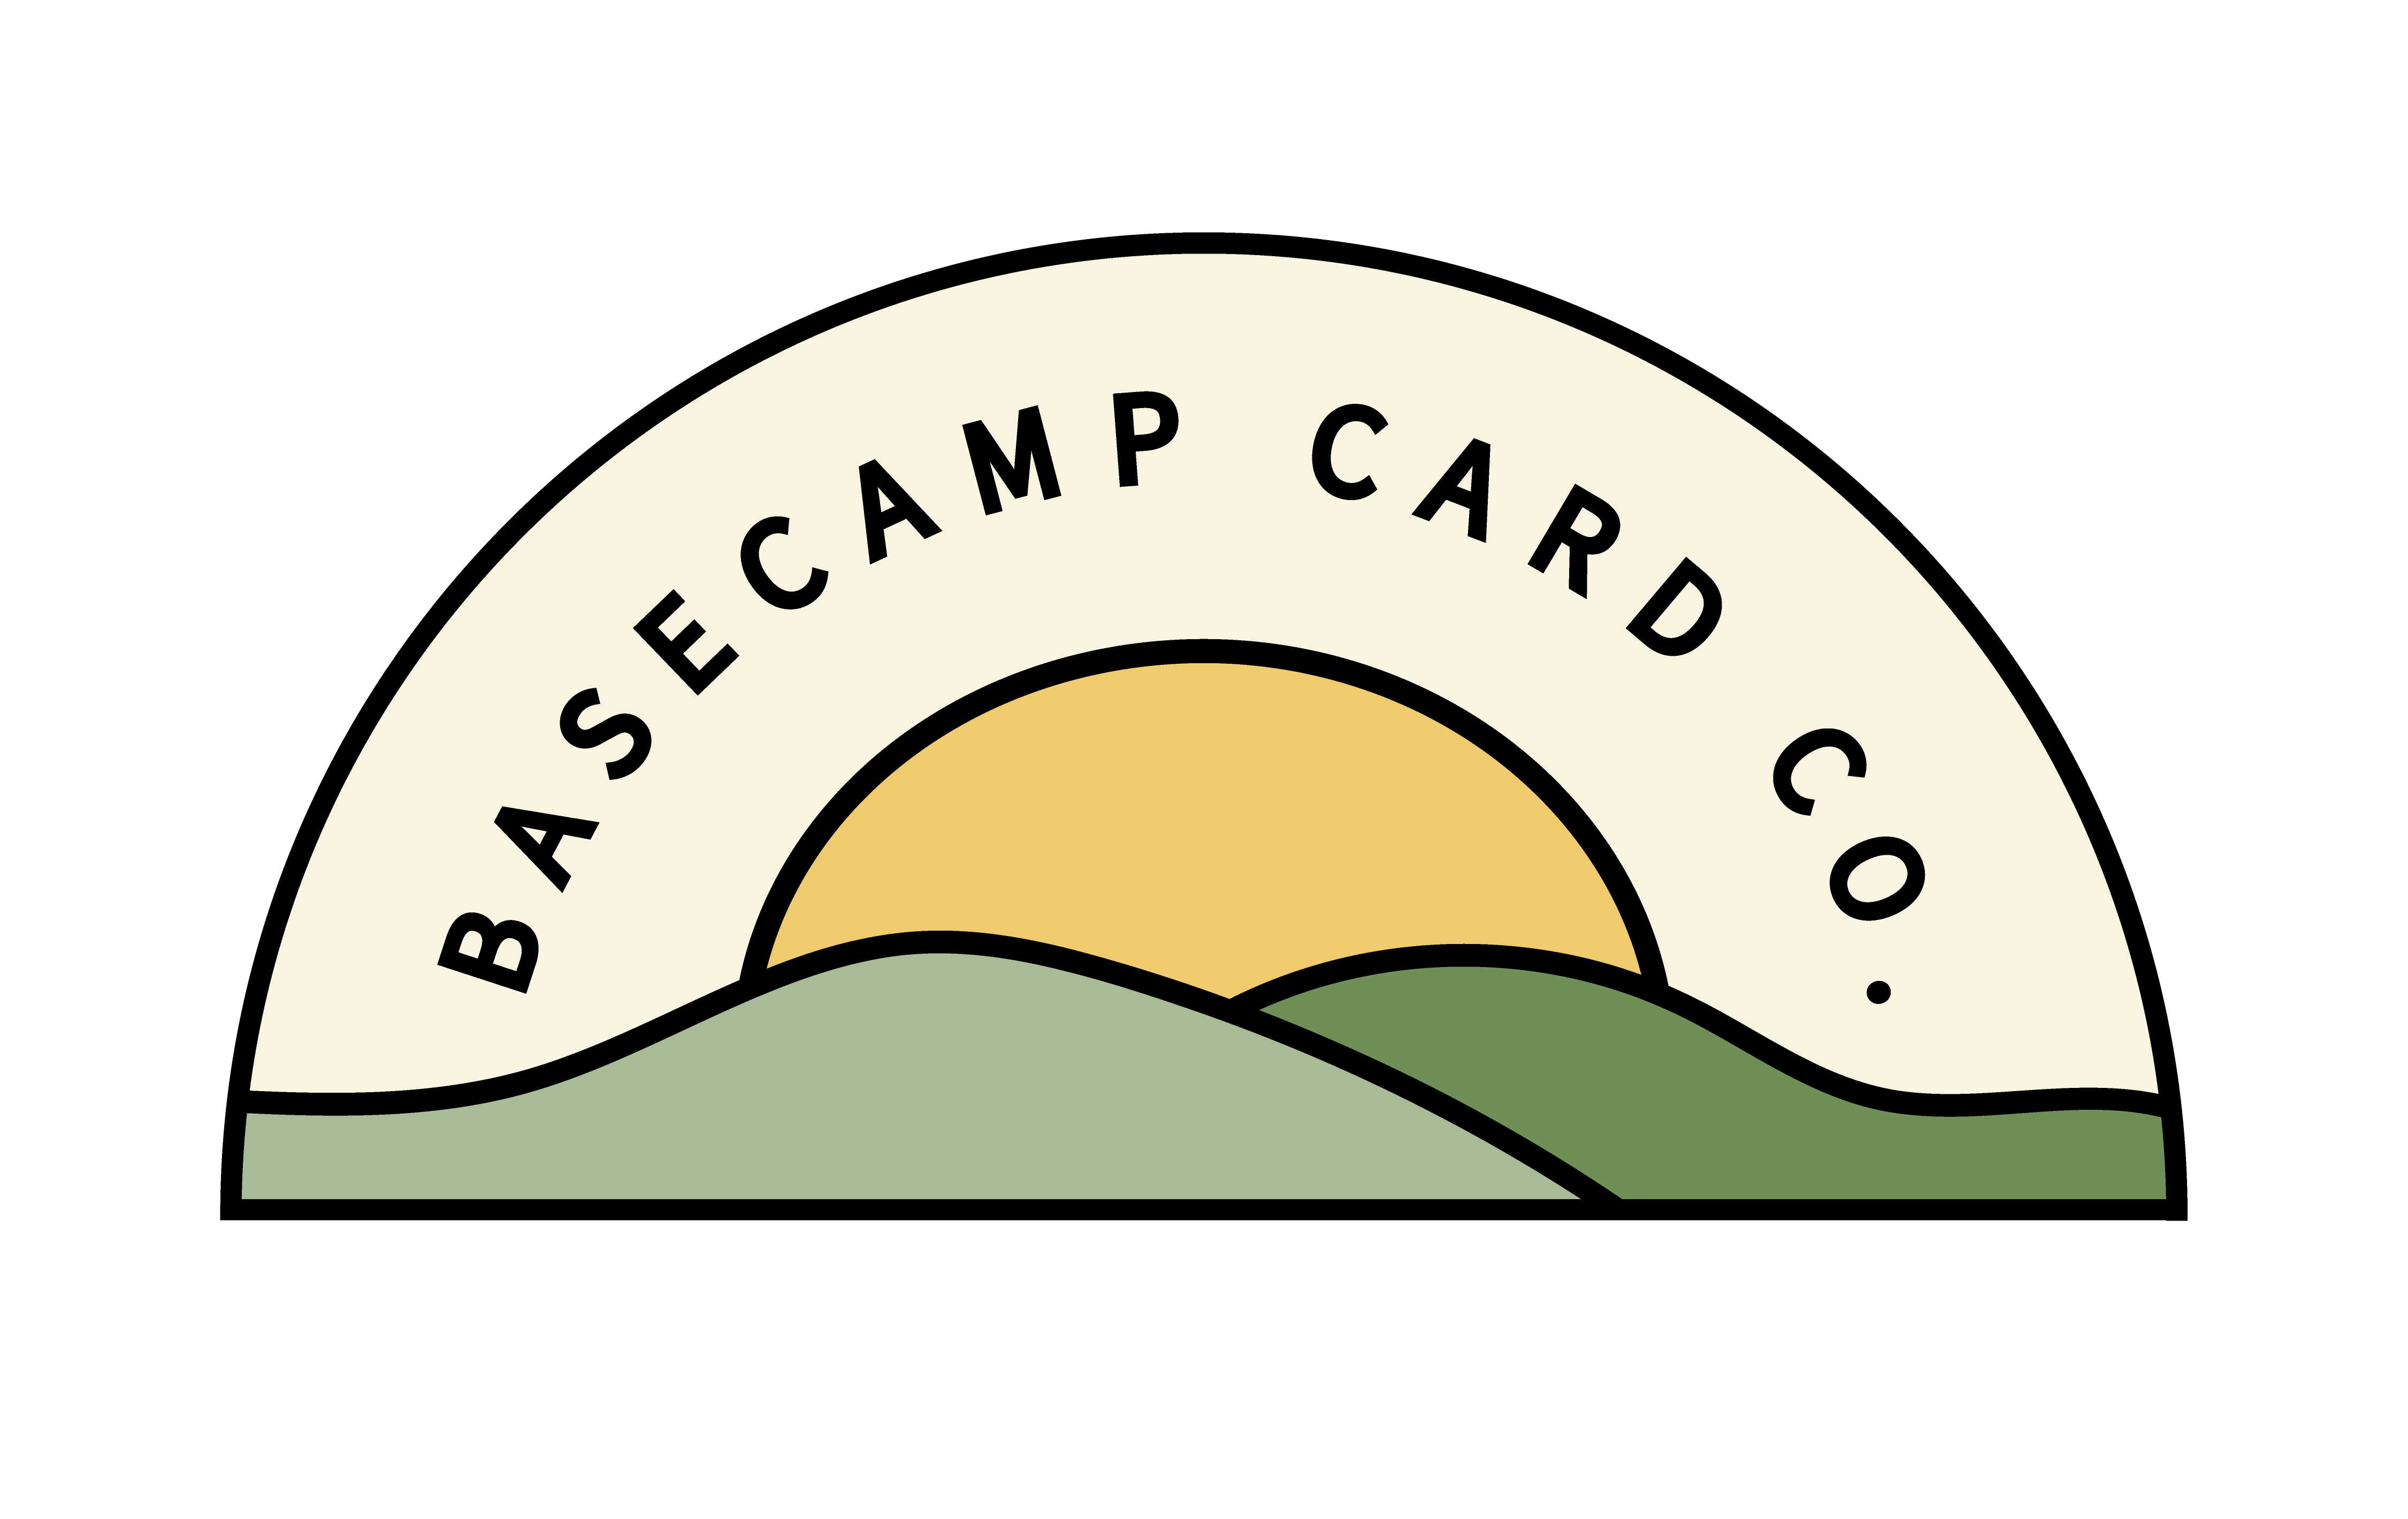 Basecamp Card Co.